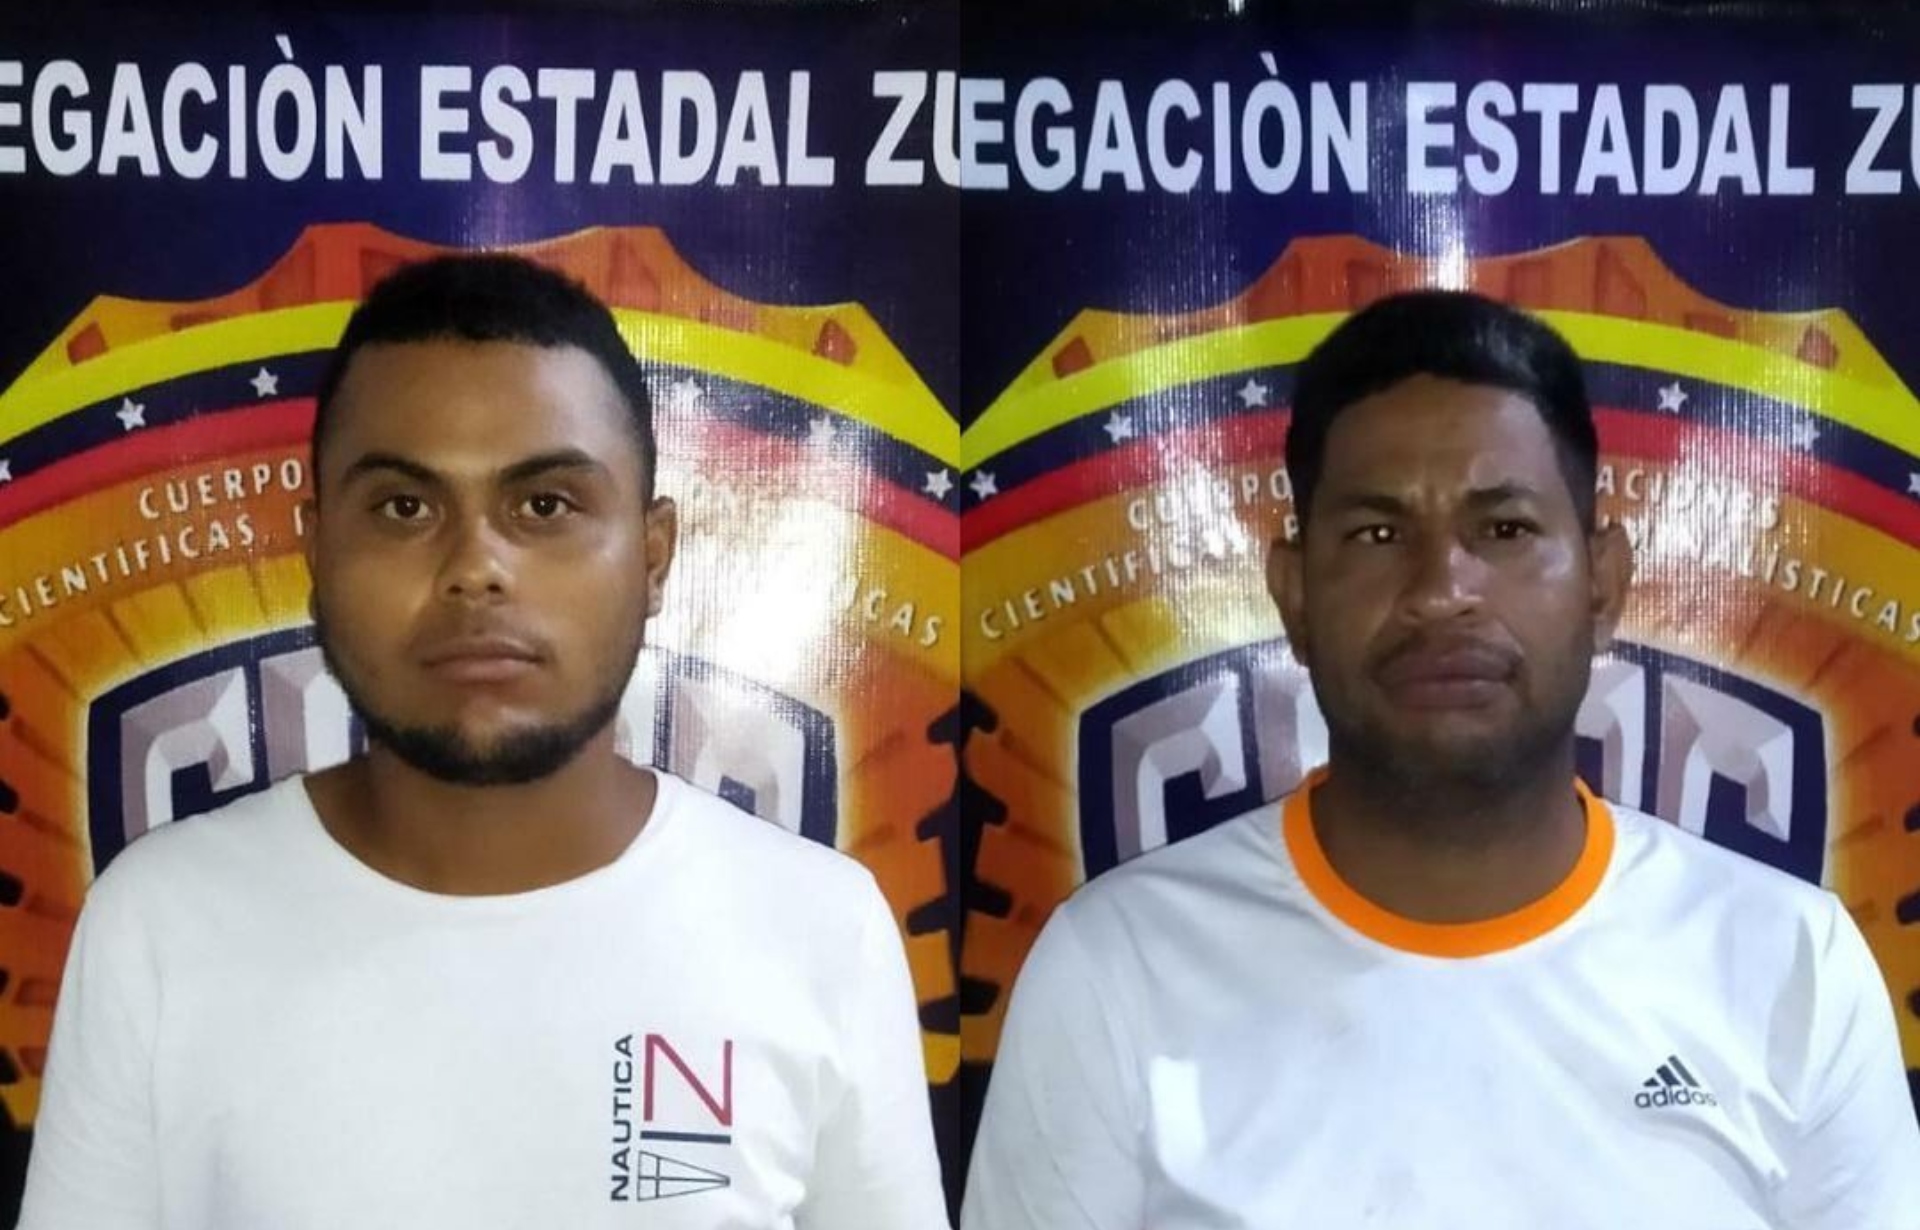 Detuvieron a dos hombres que decían ser cazatalentos de Grandes Ligas por hacer trampa en Zulia